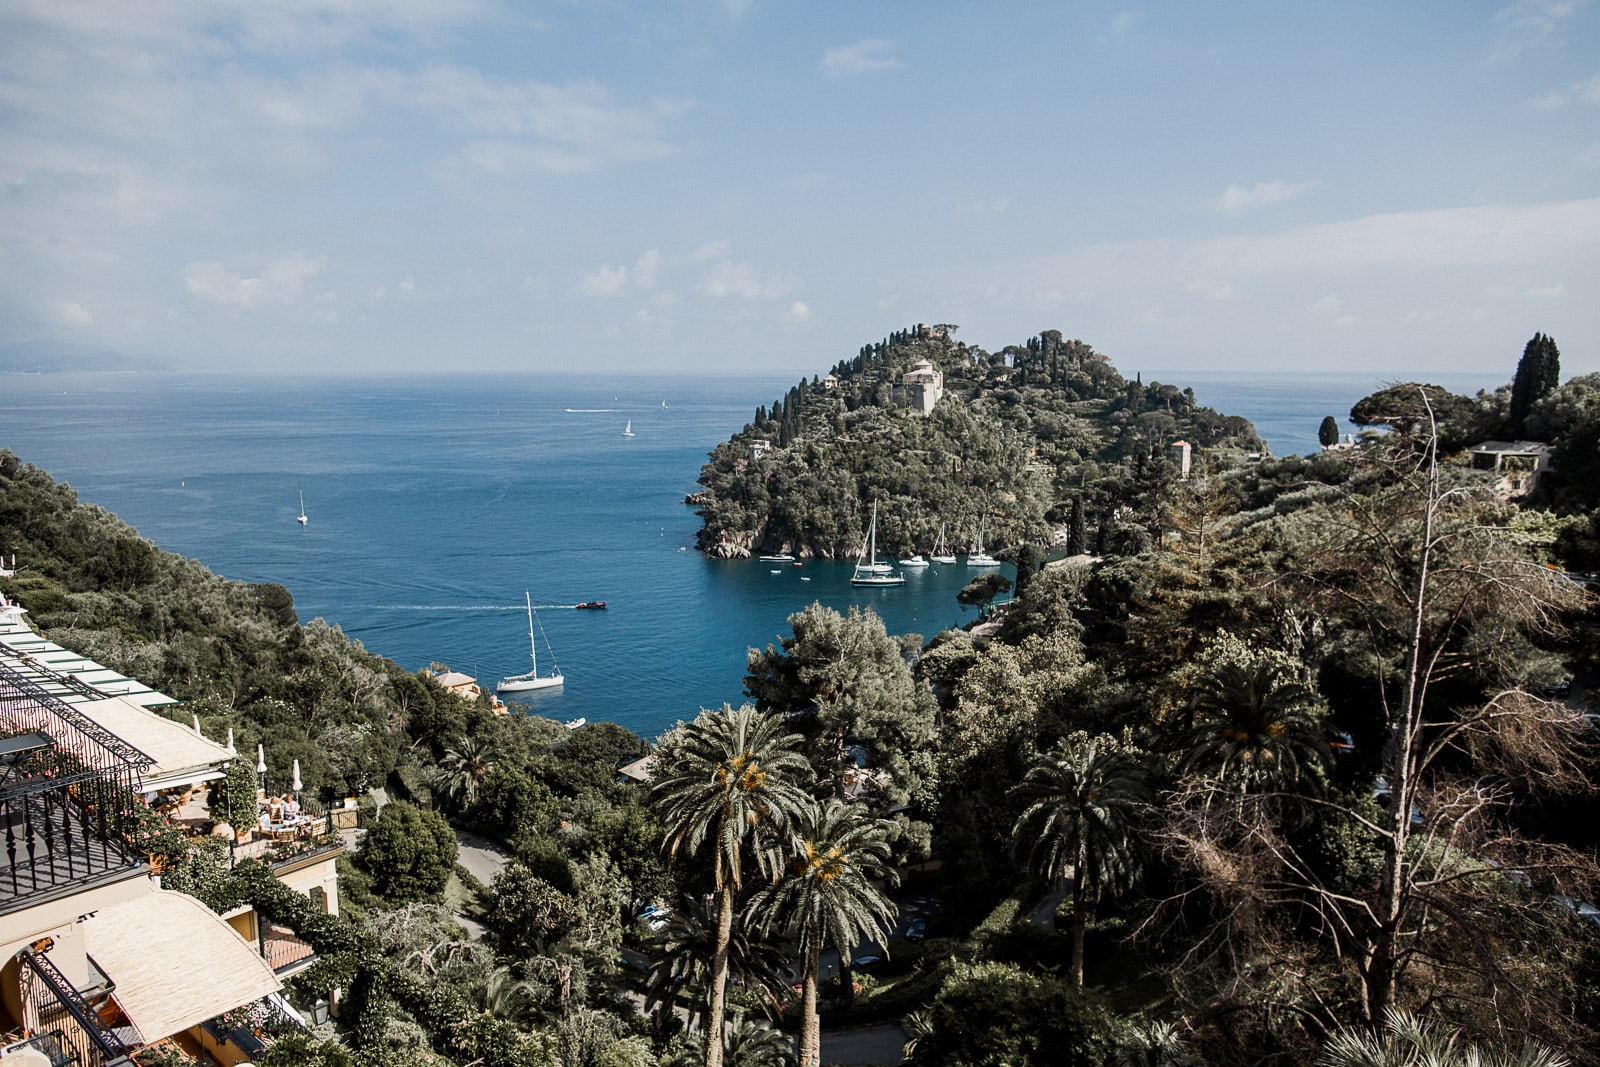 View of Portofino from Belmond Splendido Hotel in Cinque Terre